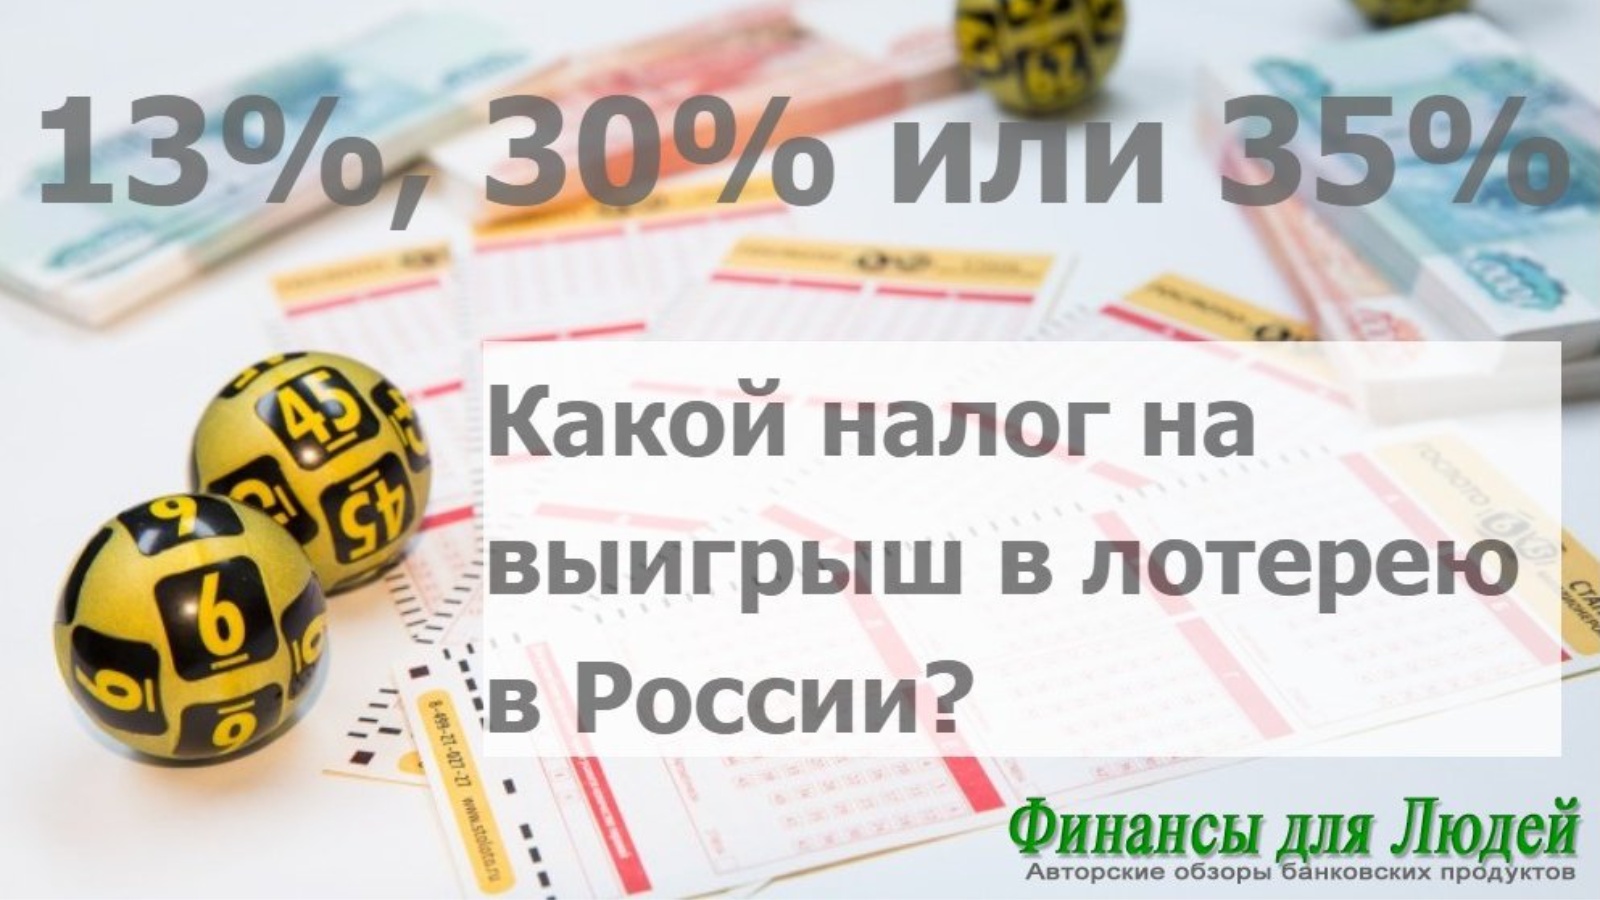 Проценты с выигрыша в лотерею русское. Налог на выигрыш в лотерею. НДФЛ С выигрыша в лотерею. Подоходный налог с выигрыша в лотерею. Налог на лотерею в России.